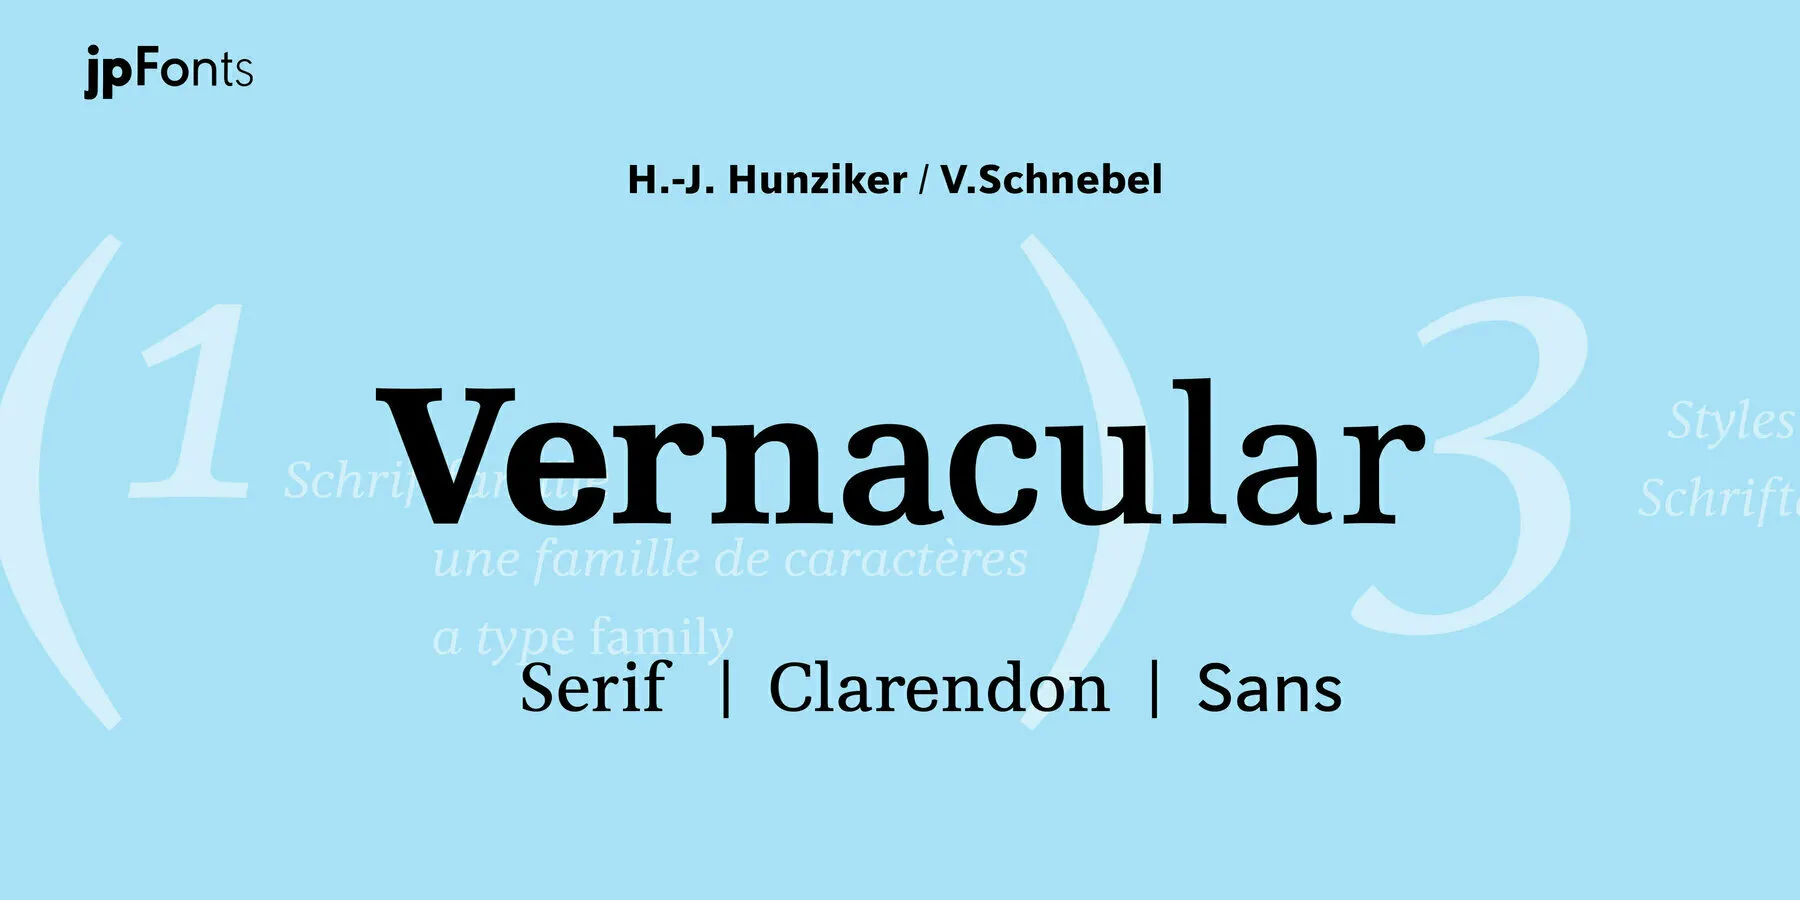 Vernacular